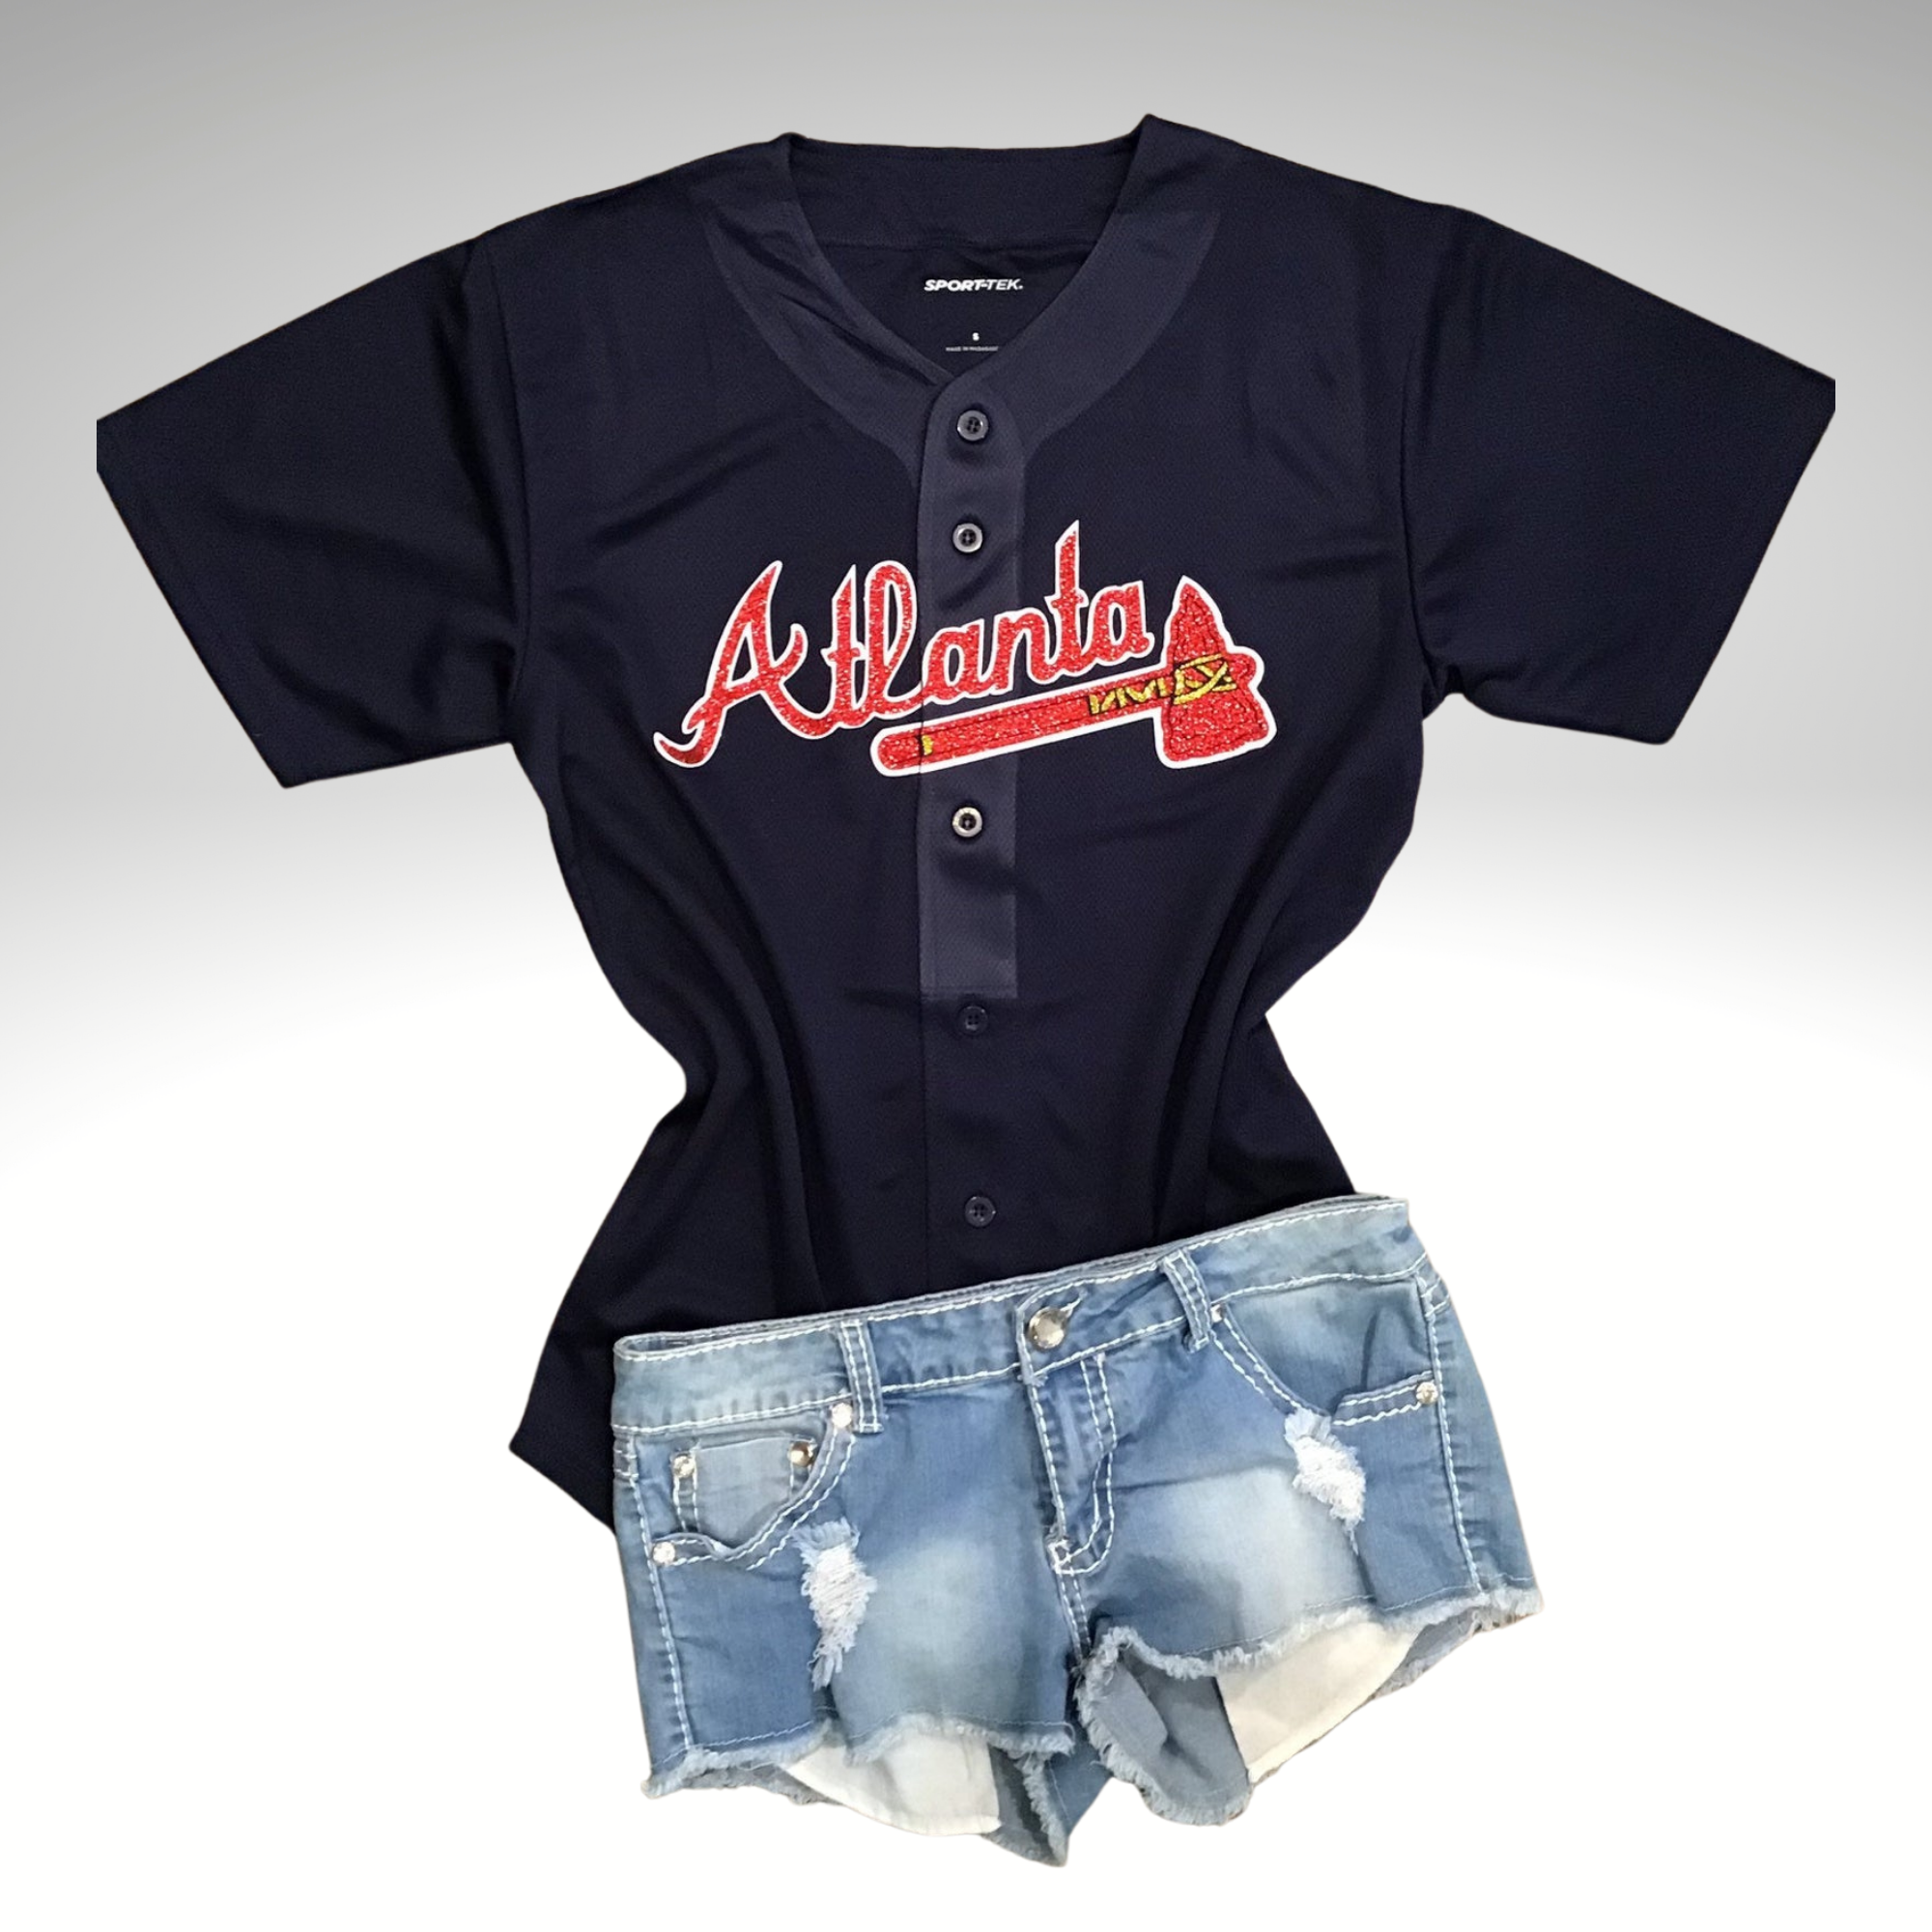 Lulu Grace Designs Atlanta Braves Top: Baseball Fan Gear & Apparel for Women XXL / Ladies Racerback Tank